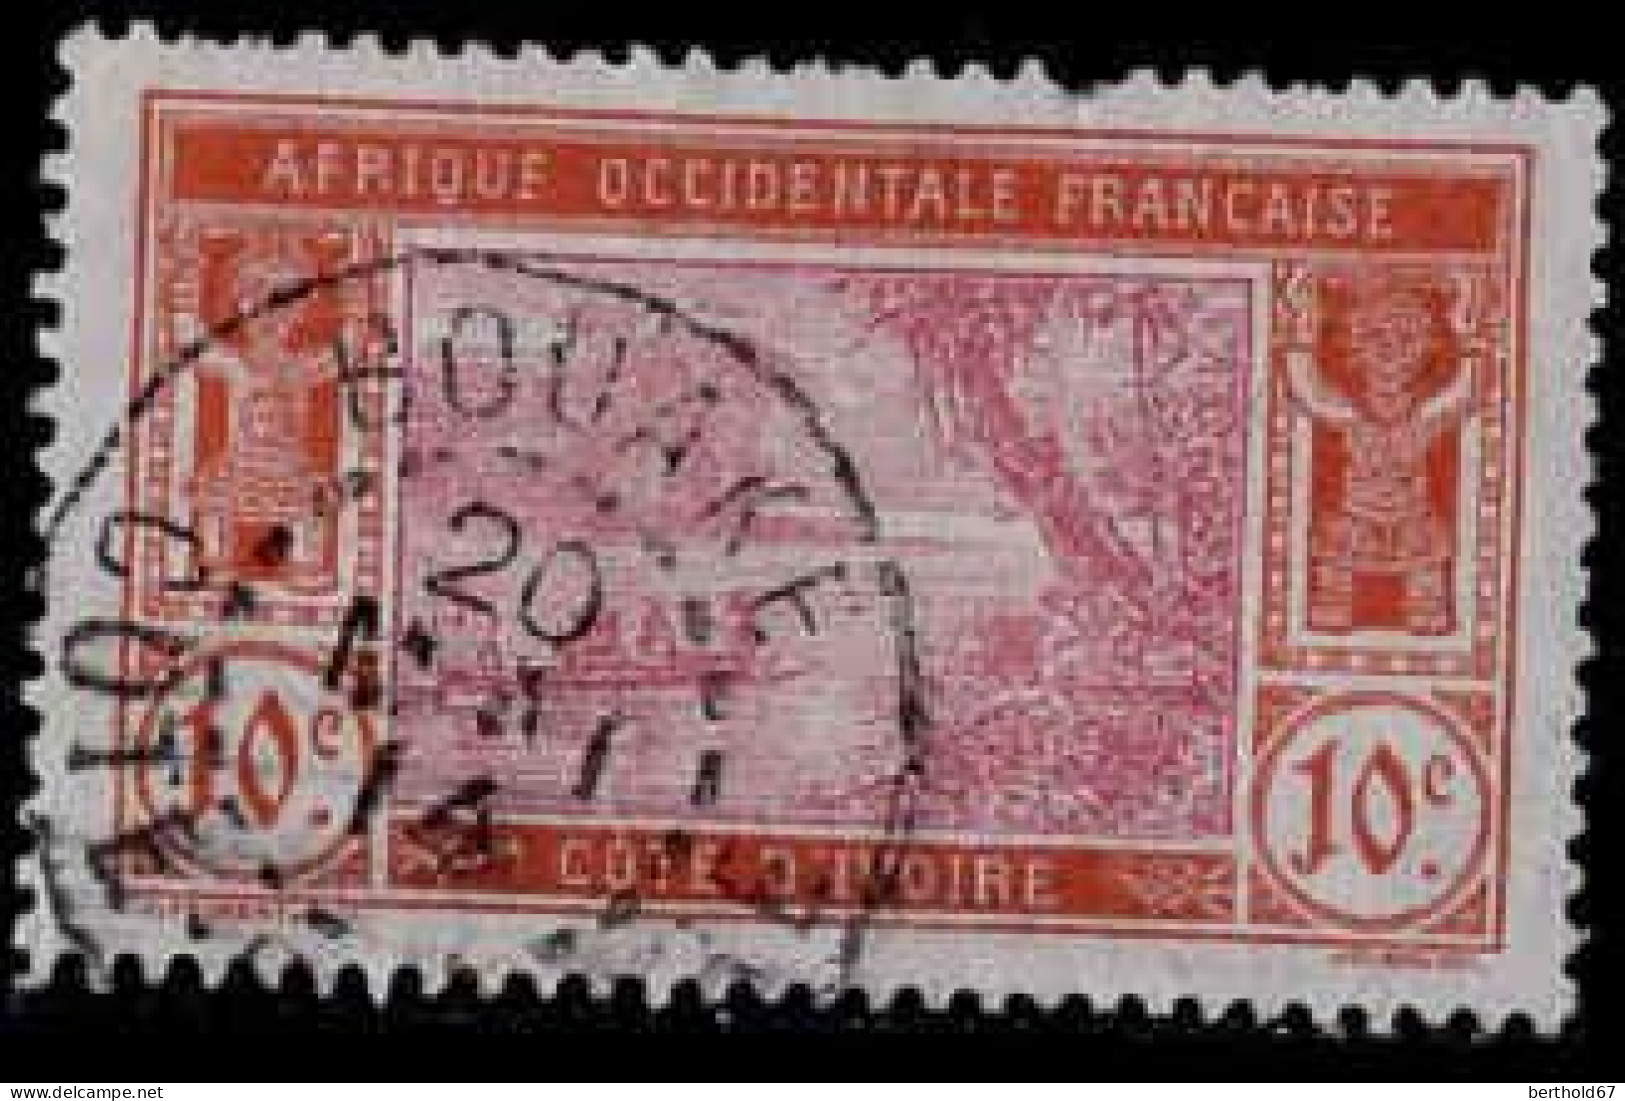 Côte D'Ivoire Poste Obl Yv: 45 Mi:45 Lagune Ebrié (TB Cachet à Date) Bouaké 20 Mai 14 Dent Crte Ht - Used Stamps